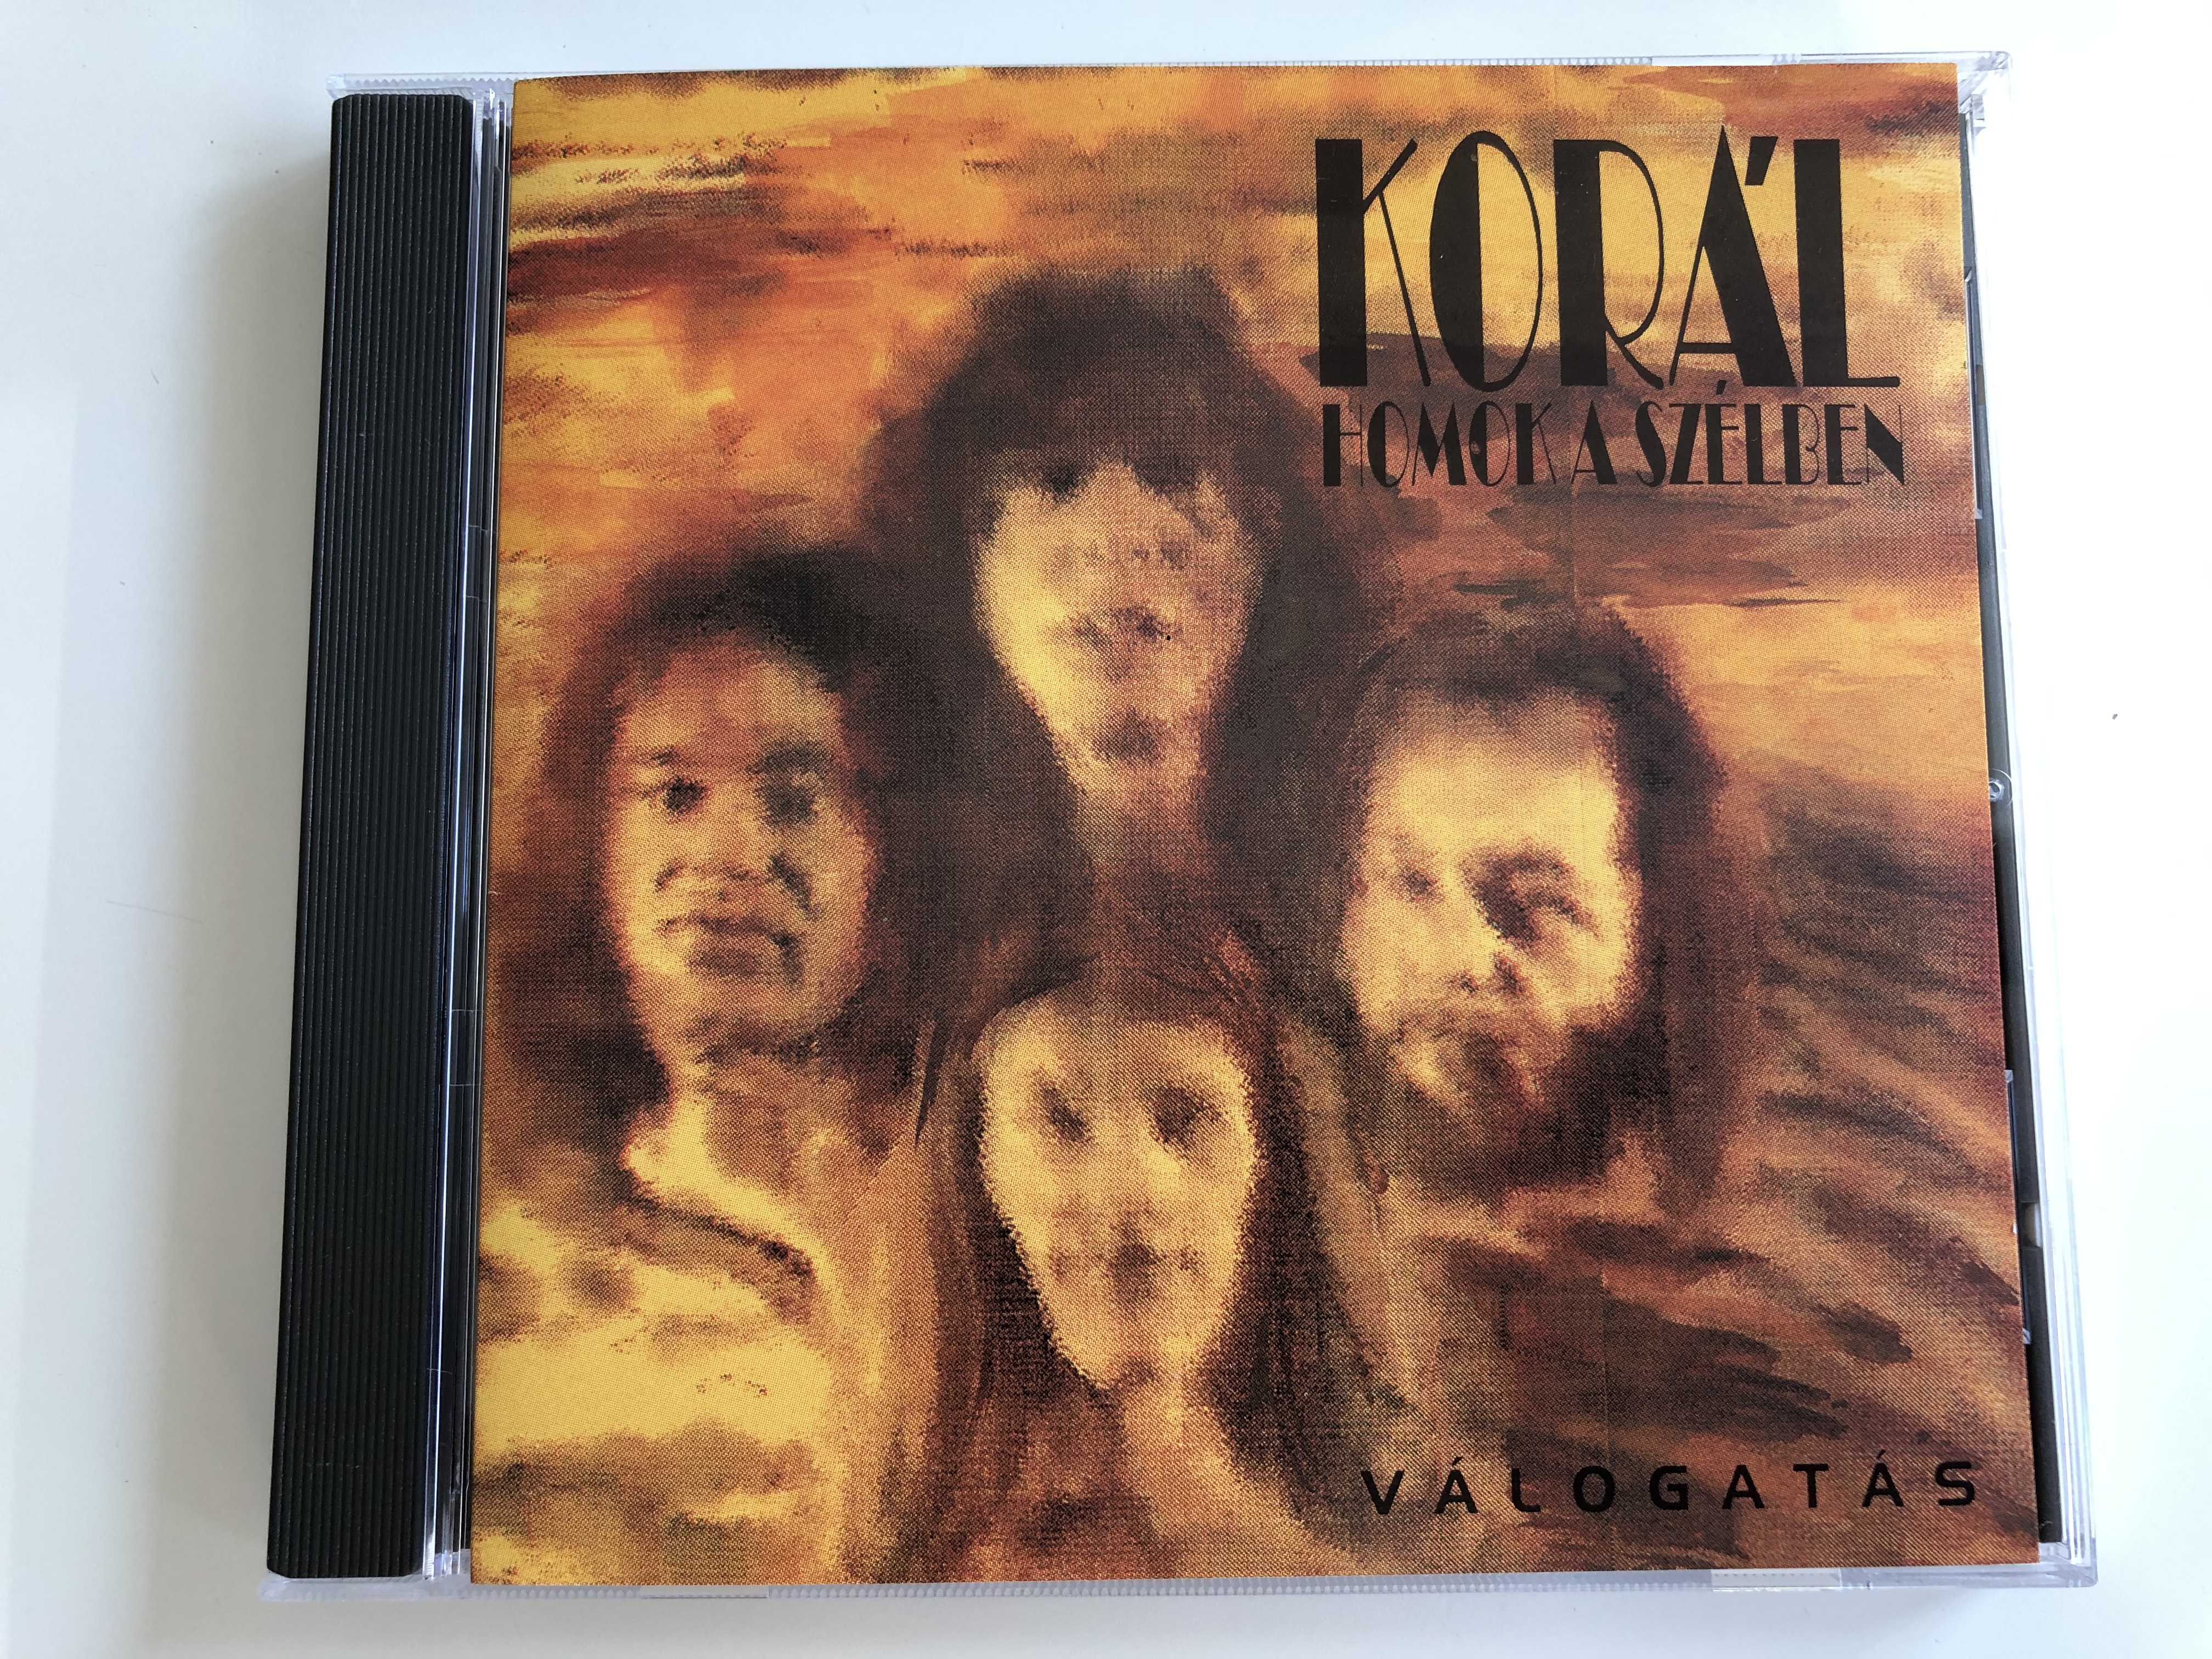 kor-l-homok-a-sz-lben-v-logat-s-gong-audio-cd-1993-hcd-37724-1-.jpg